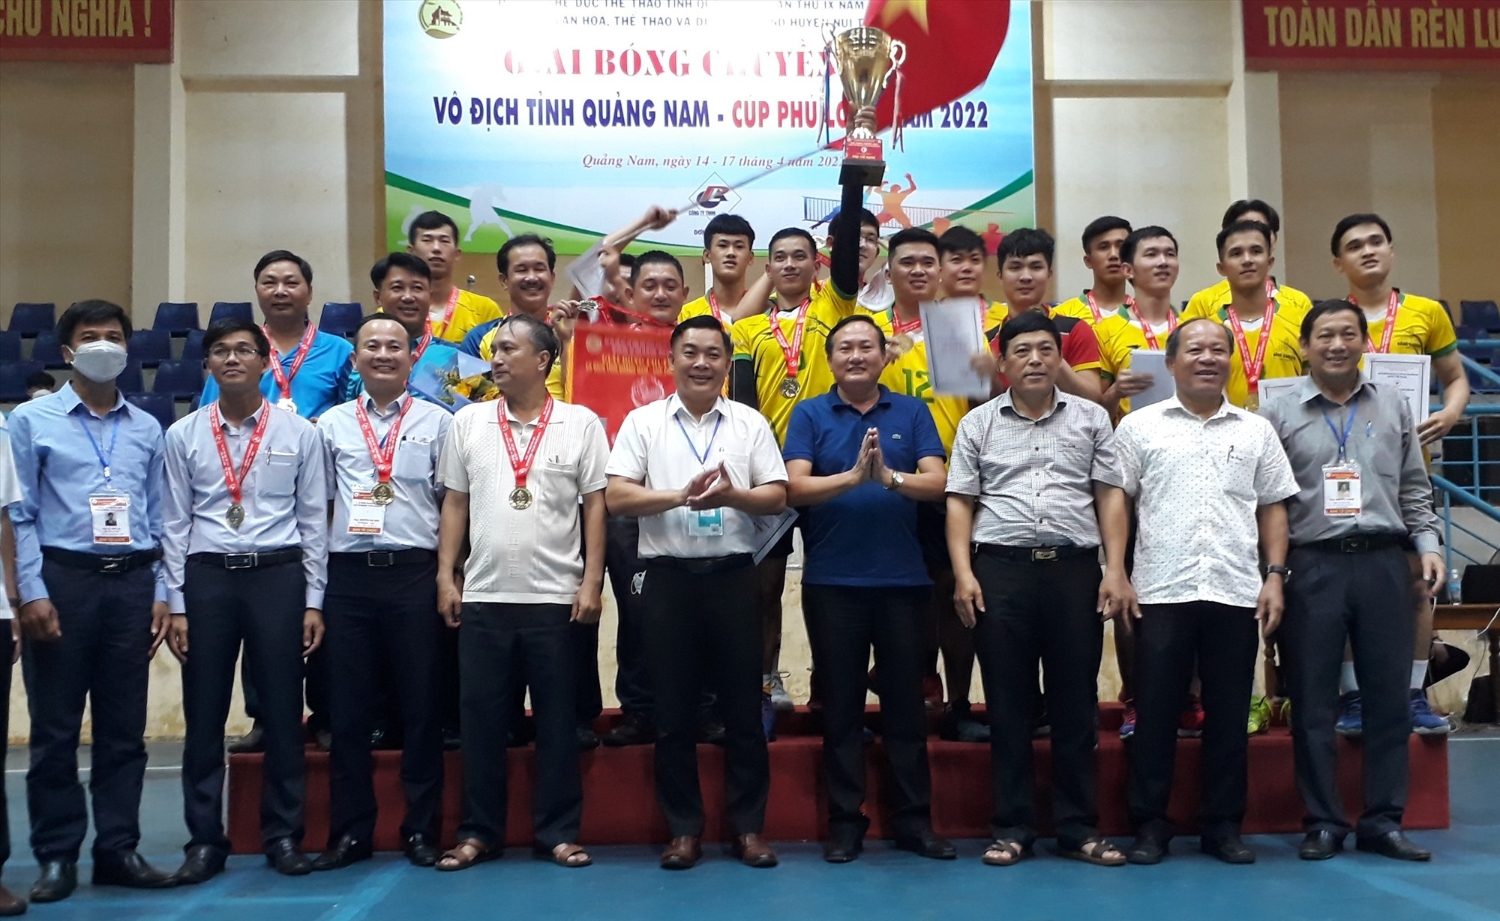 Ban tổ chức giải và lãnh đạo huyện Núi Thành trao cúp vô địch cho đội bóng Núi Thành. Ảnh: T.V